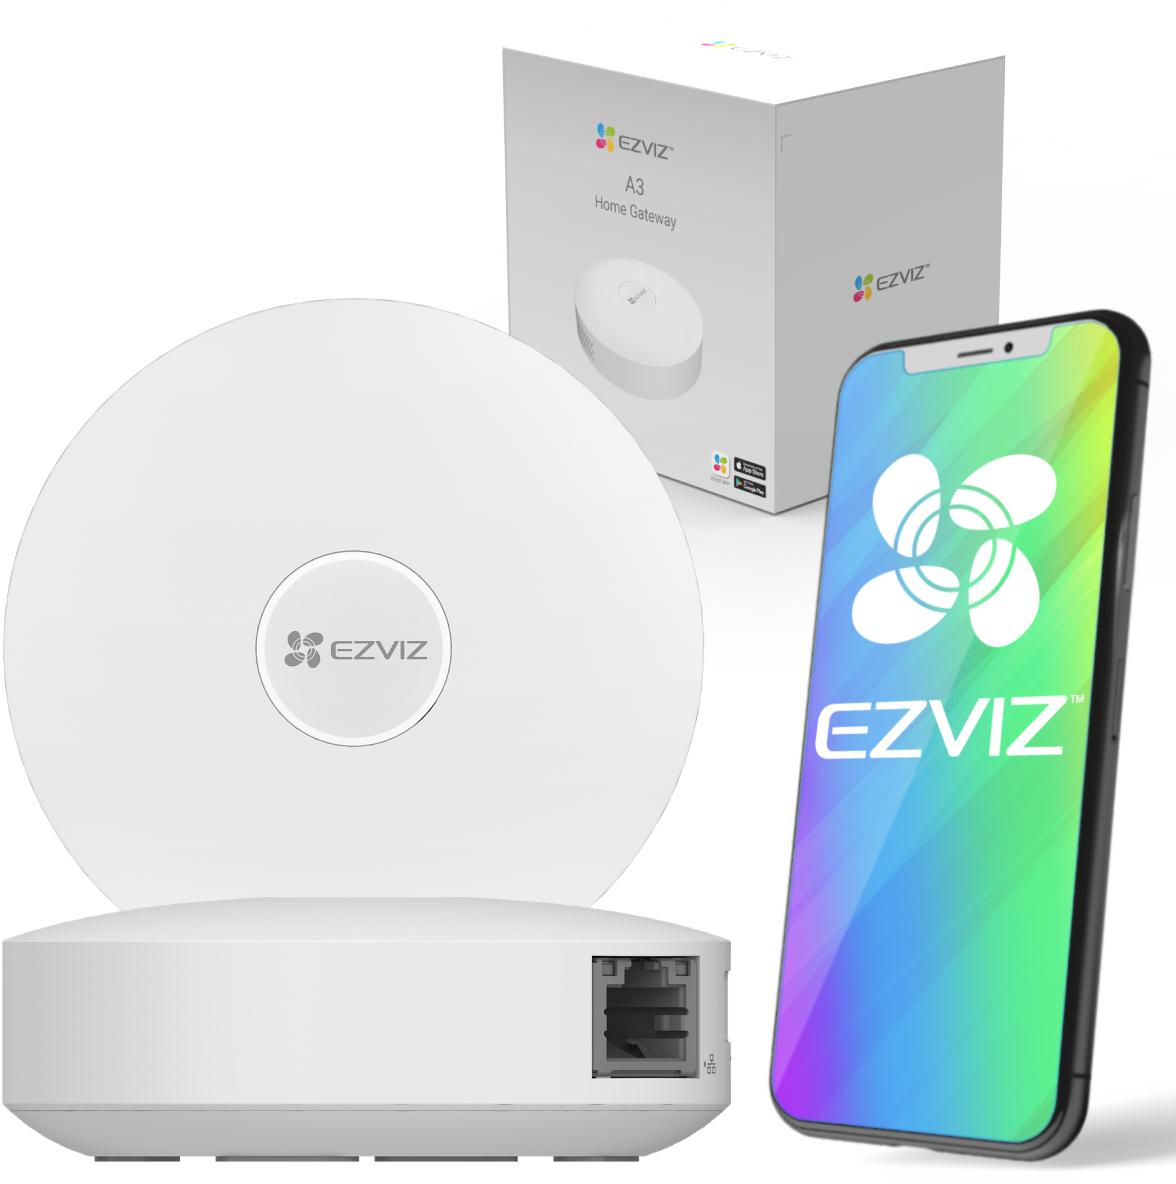 Bramka ZigBee EZVIZ A3 - najważniejsze cechy centrali do podłączania inteligentnych urządzeń do ochrony domu: